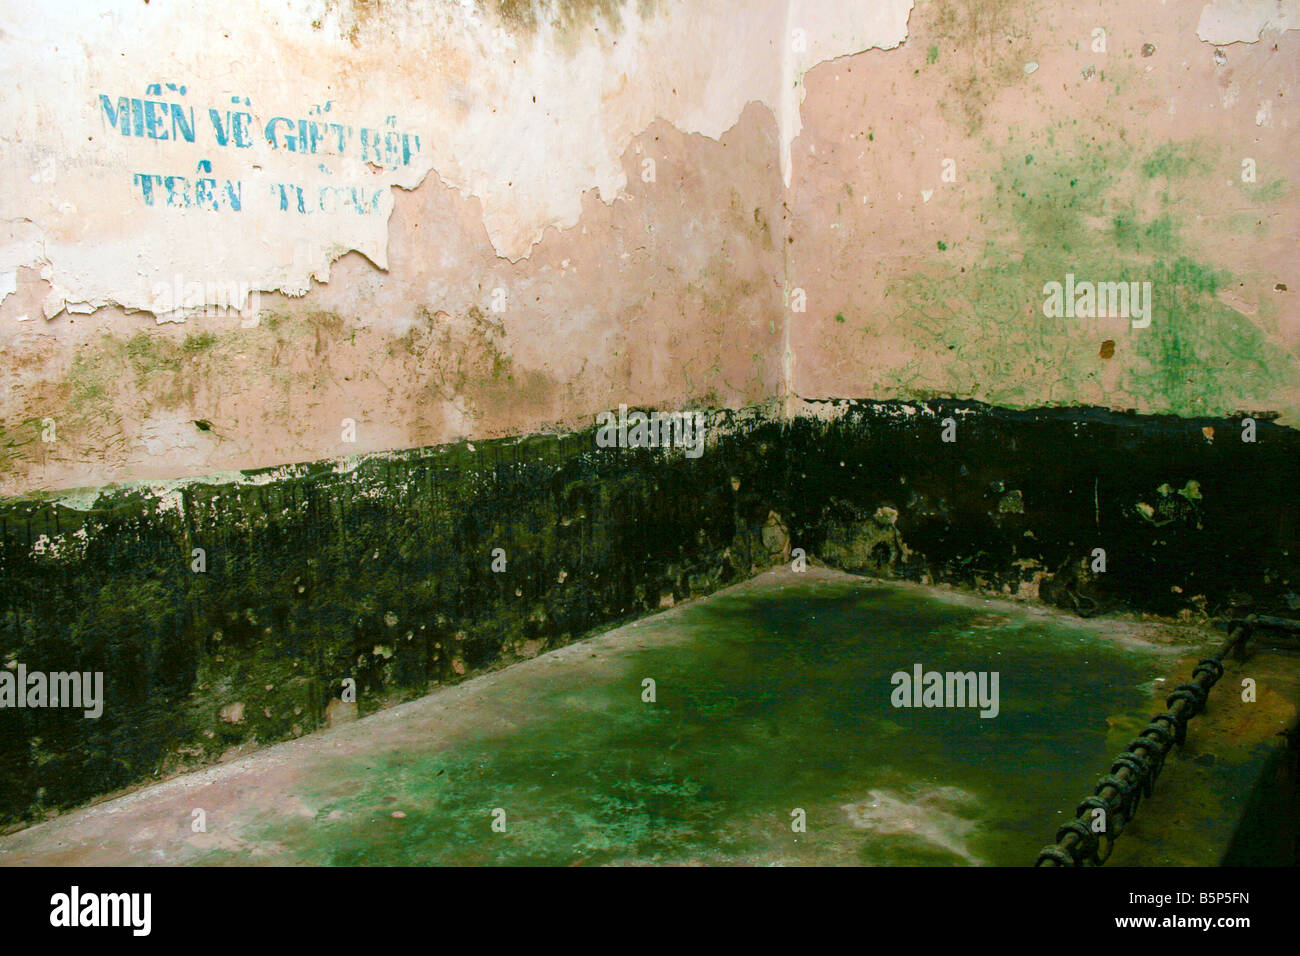 very wet prison cell in poulo condor's convict prison, vietnam Stock Photo